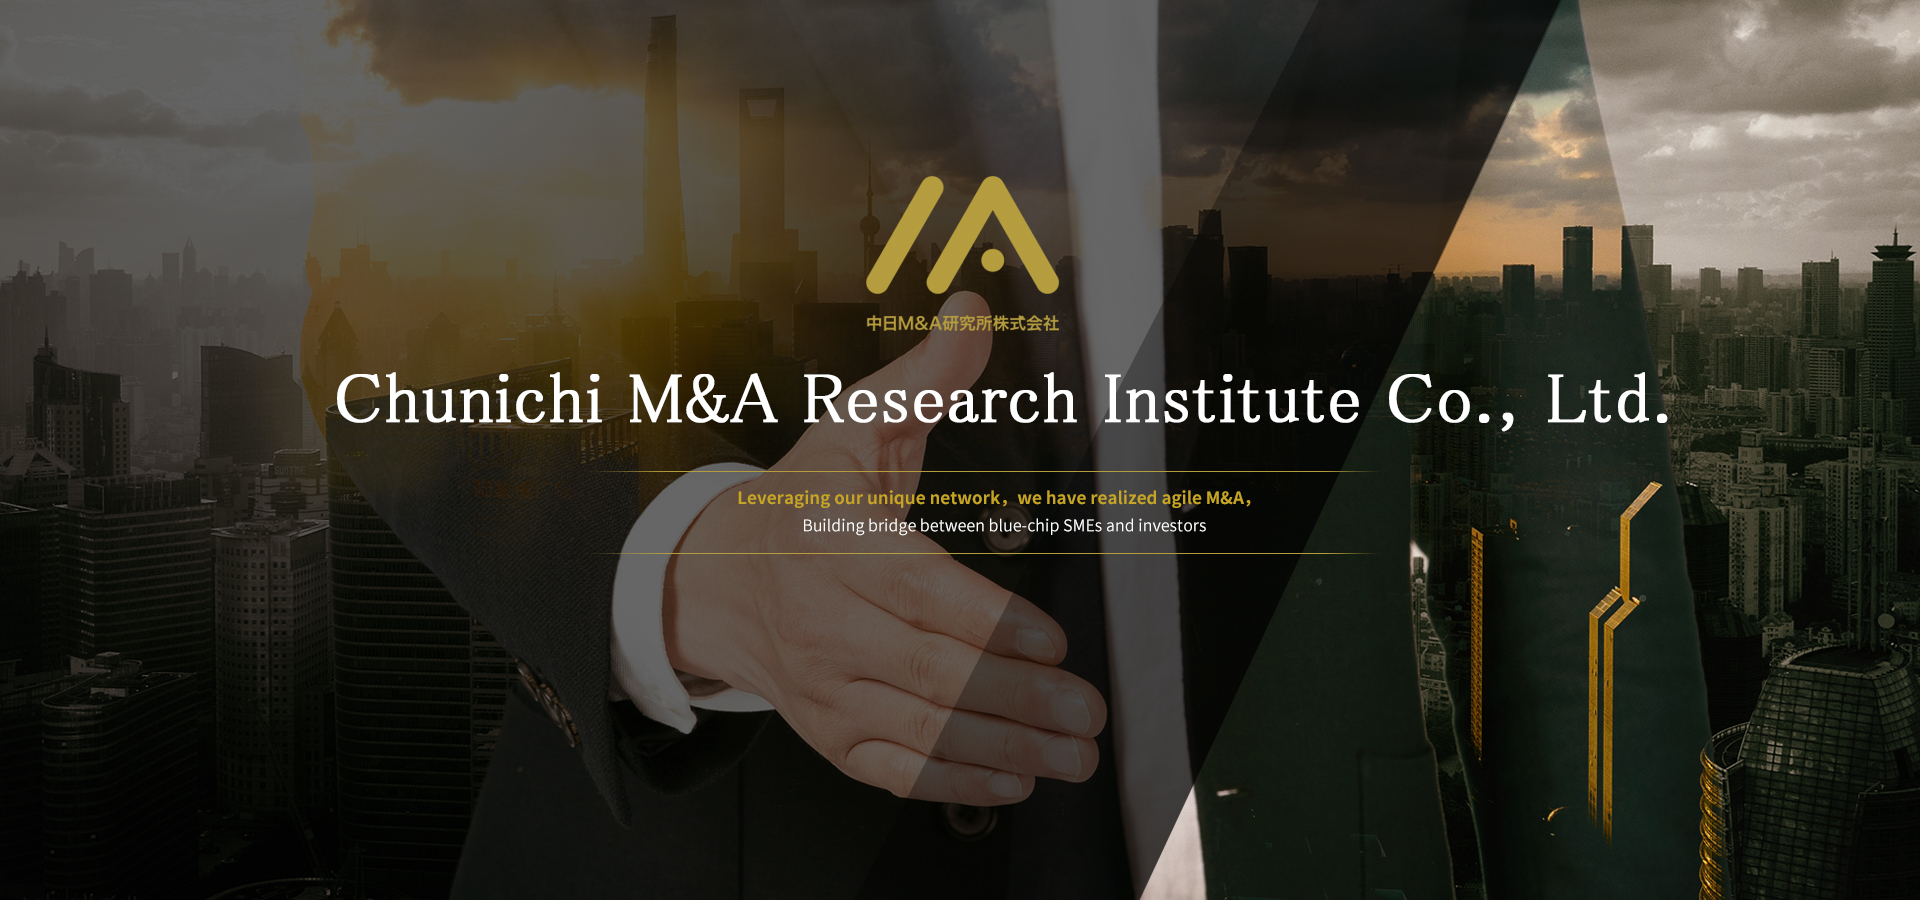 Chunichi M&A Research Institute Co., Ltd.